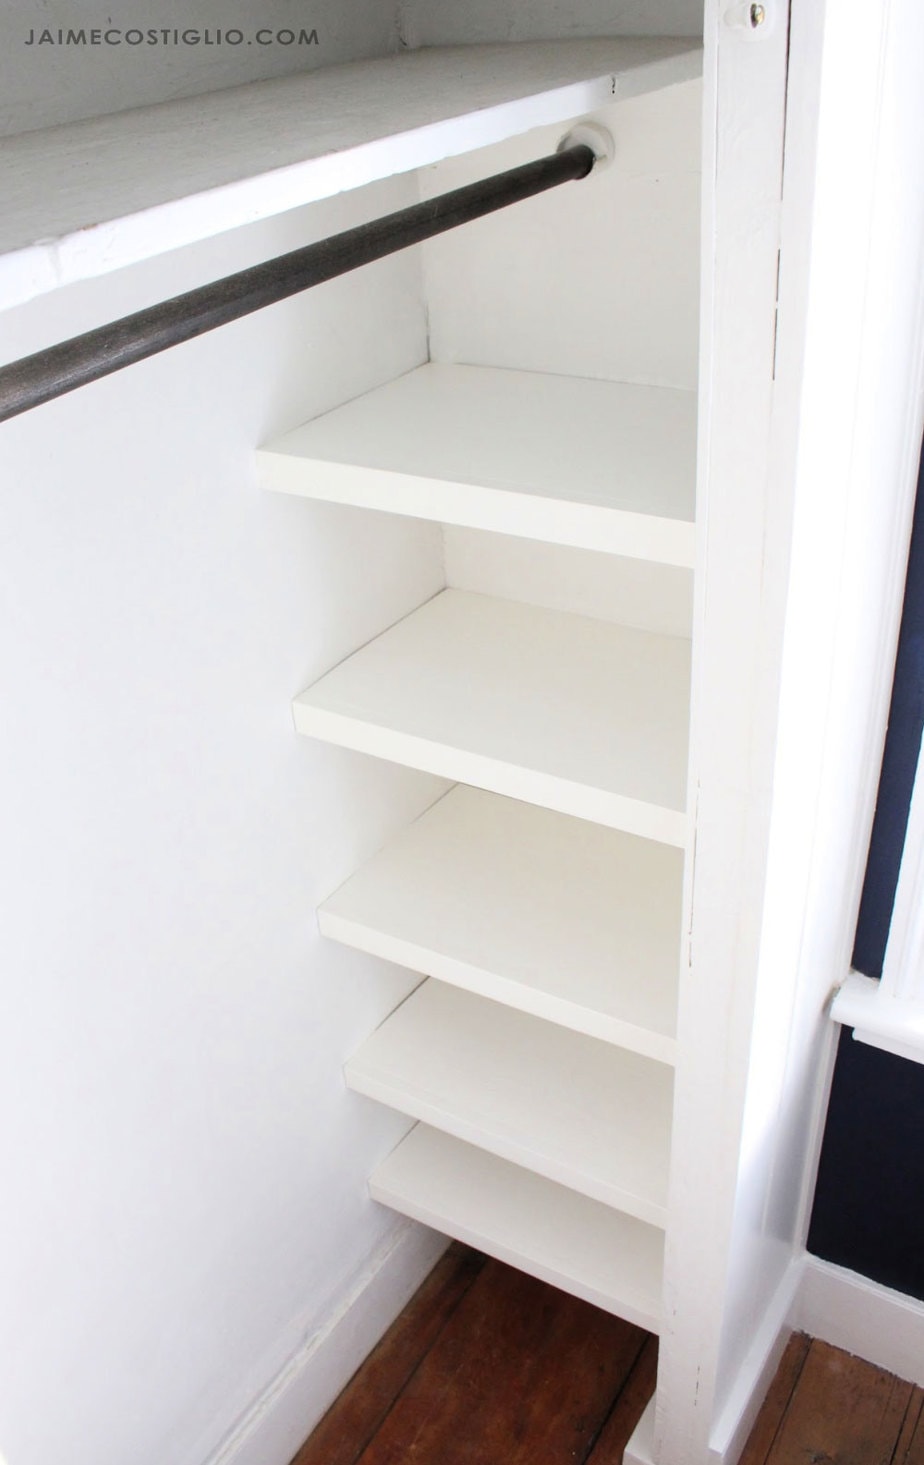 Easy Closet Shelves Jaime Costiglio, How To Build Storage Shelves In Closet